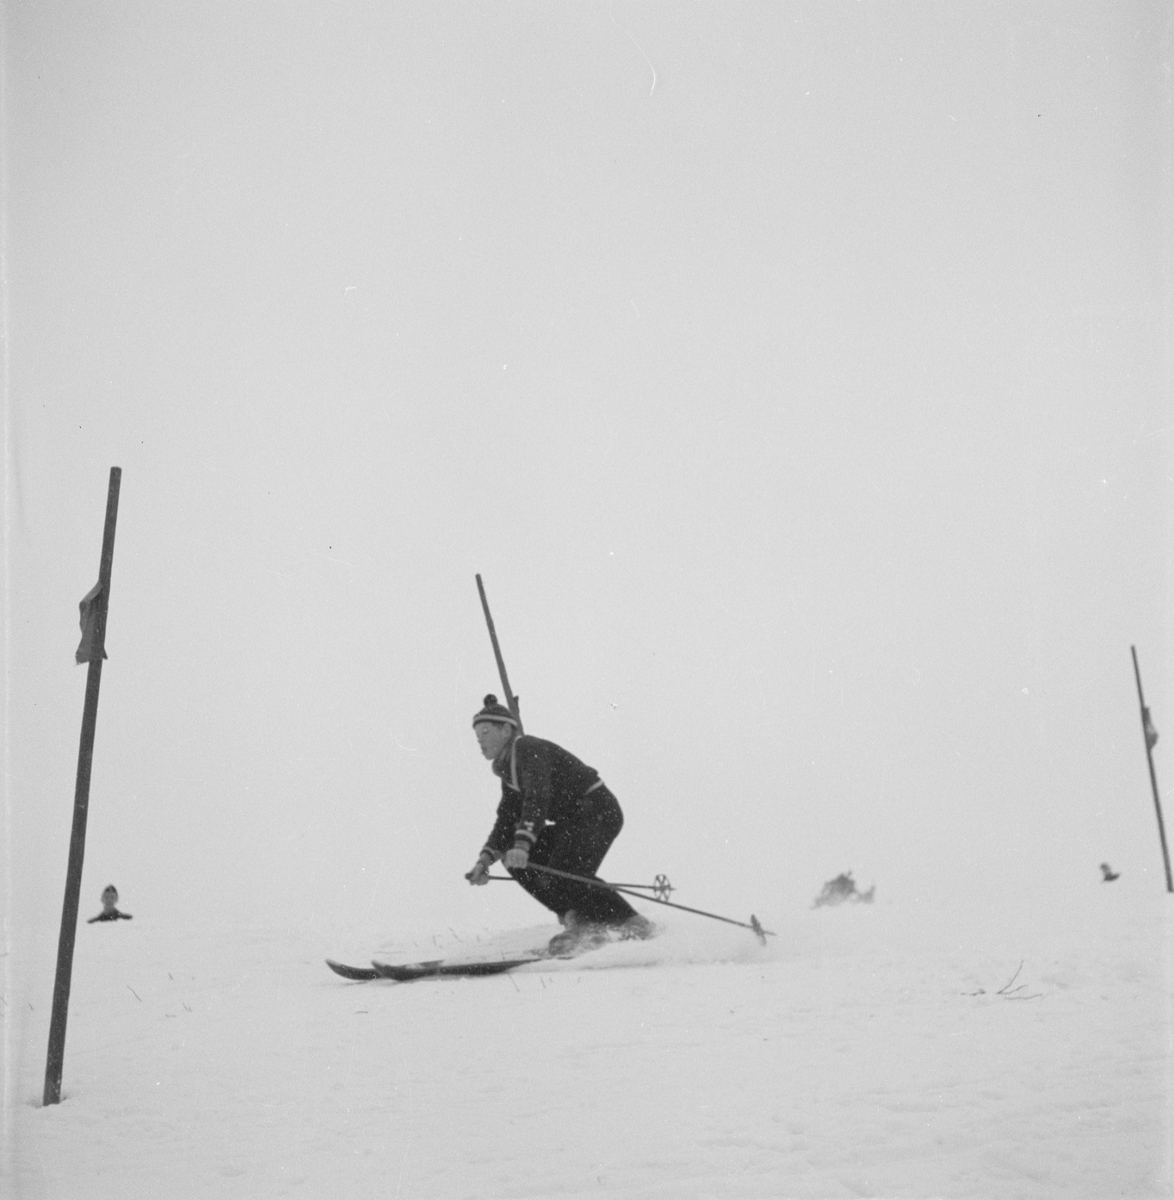 Skidtävling, DM, slalom, Uppsala 1954